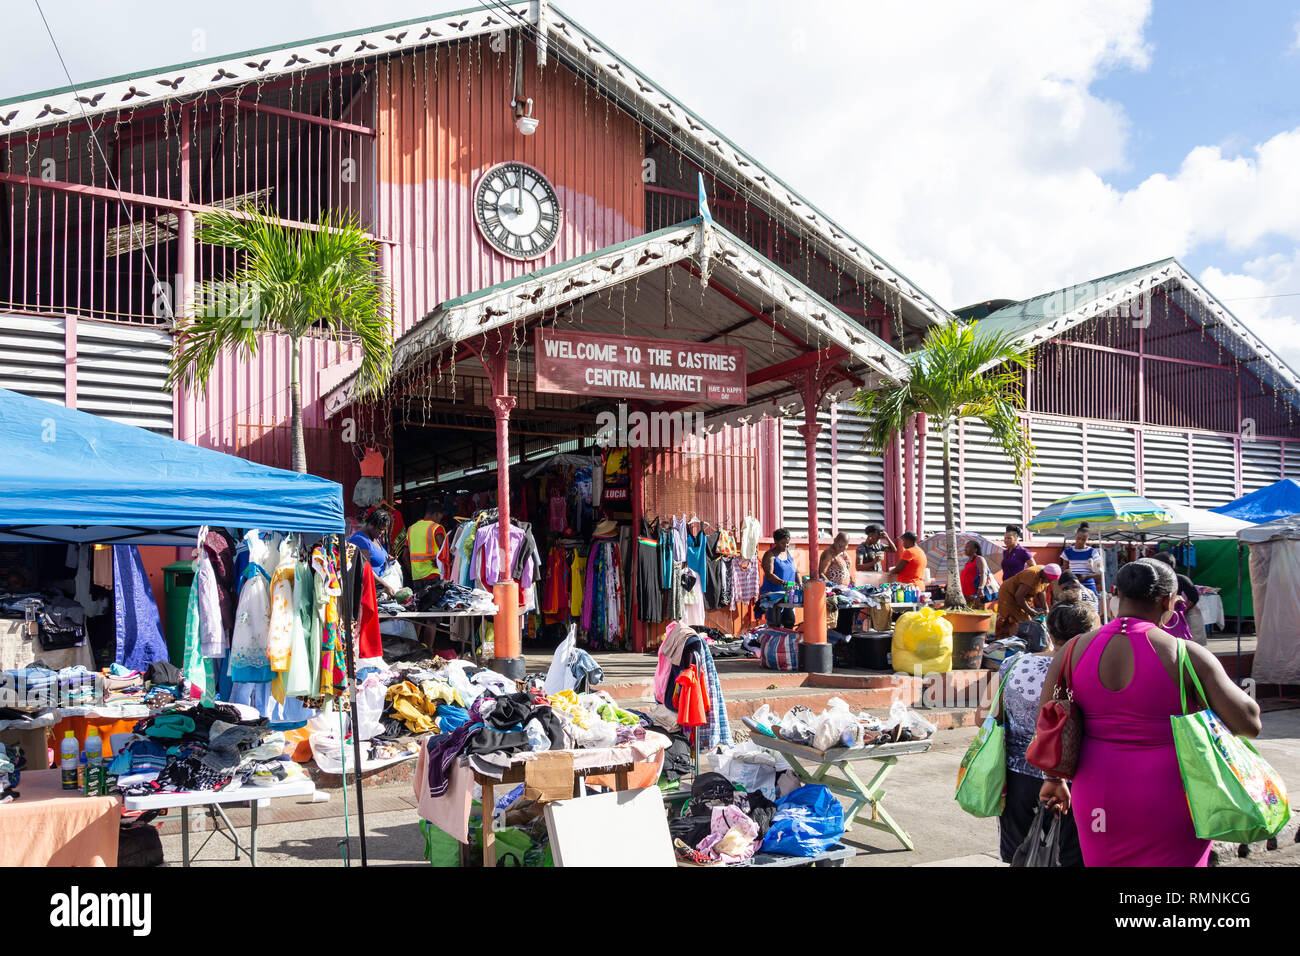 Eingang zu Castries Central Market, John Compton Highway, Castries, St. Lucia, Kleine Antillen, Karibik Stockfoto